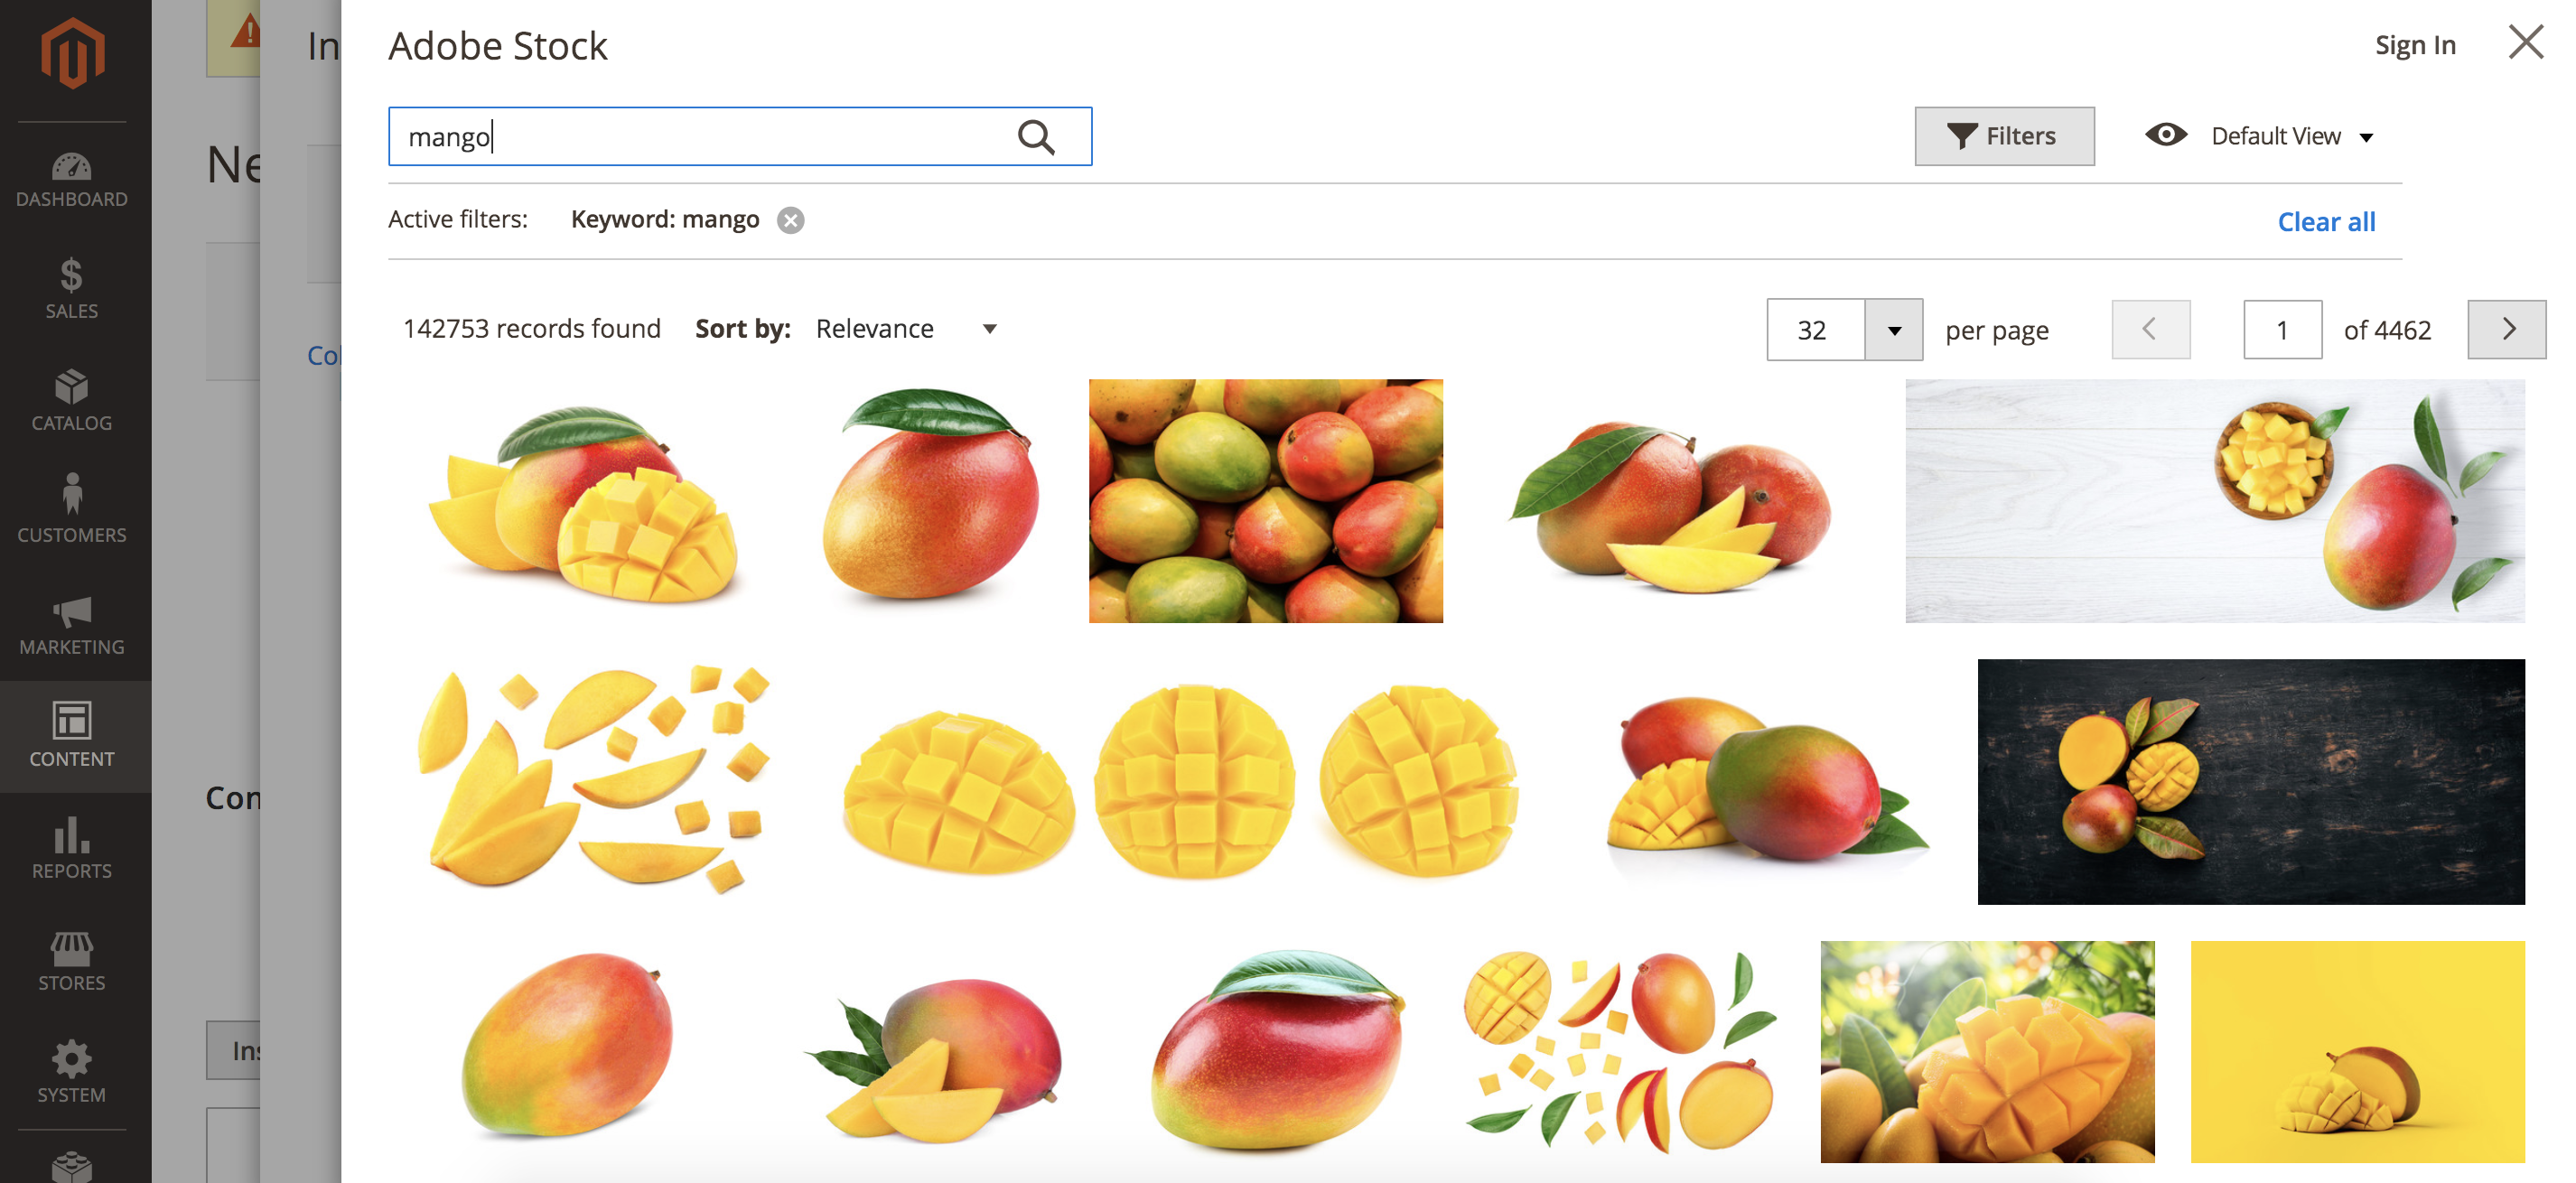 Adobe Stock-Suchergebnisse für das Stichwort "mango"